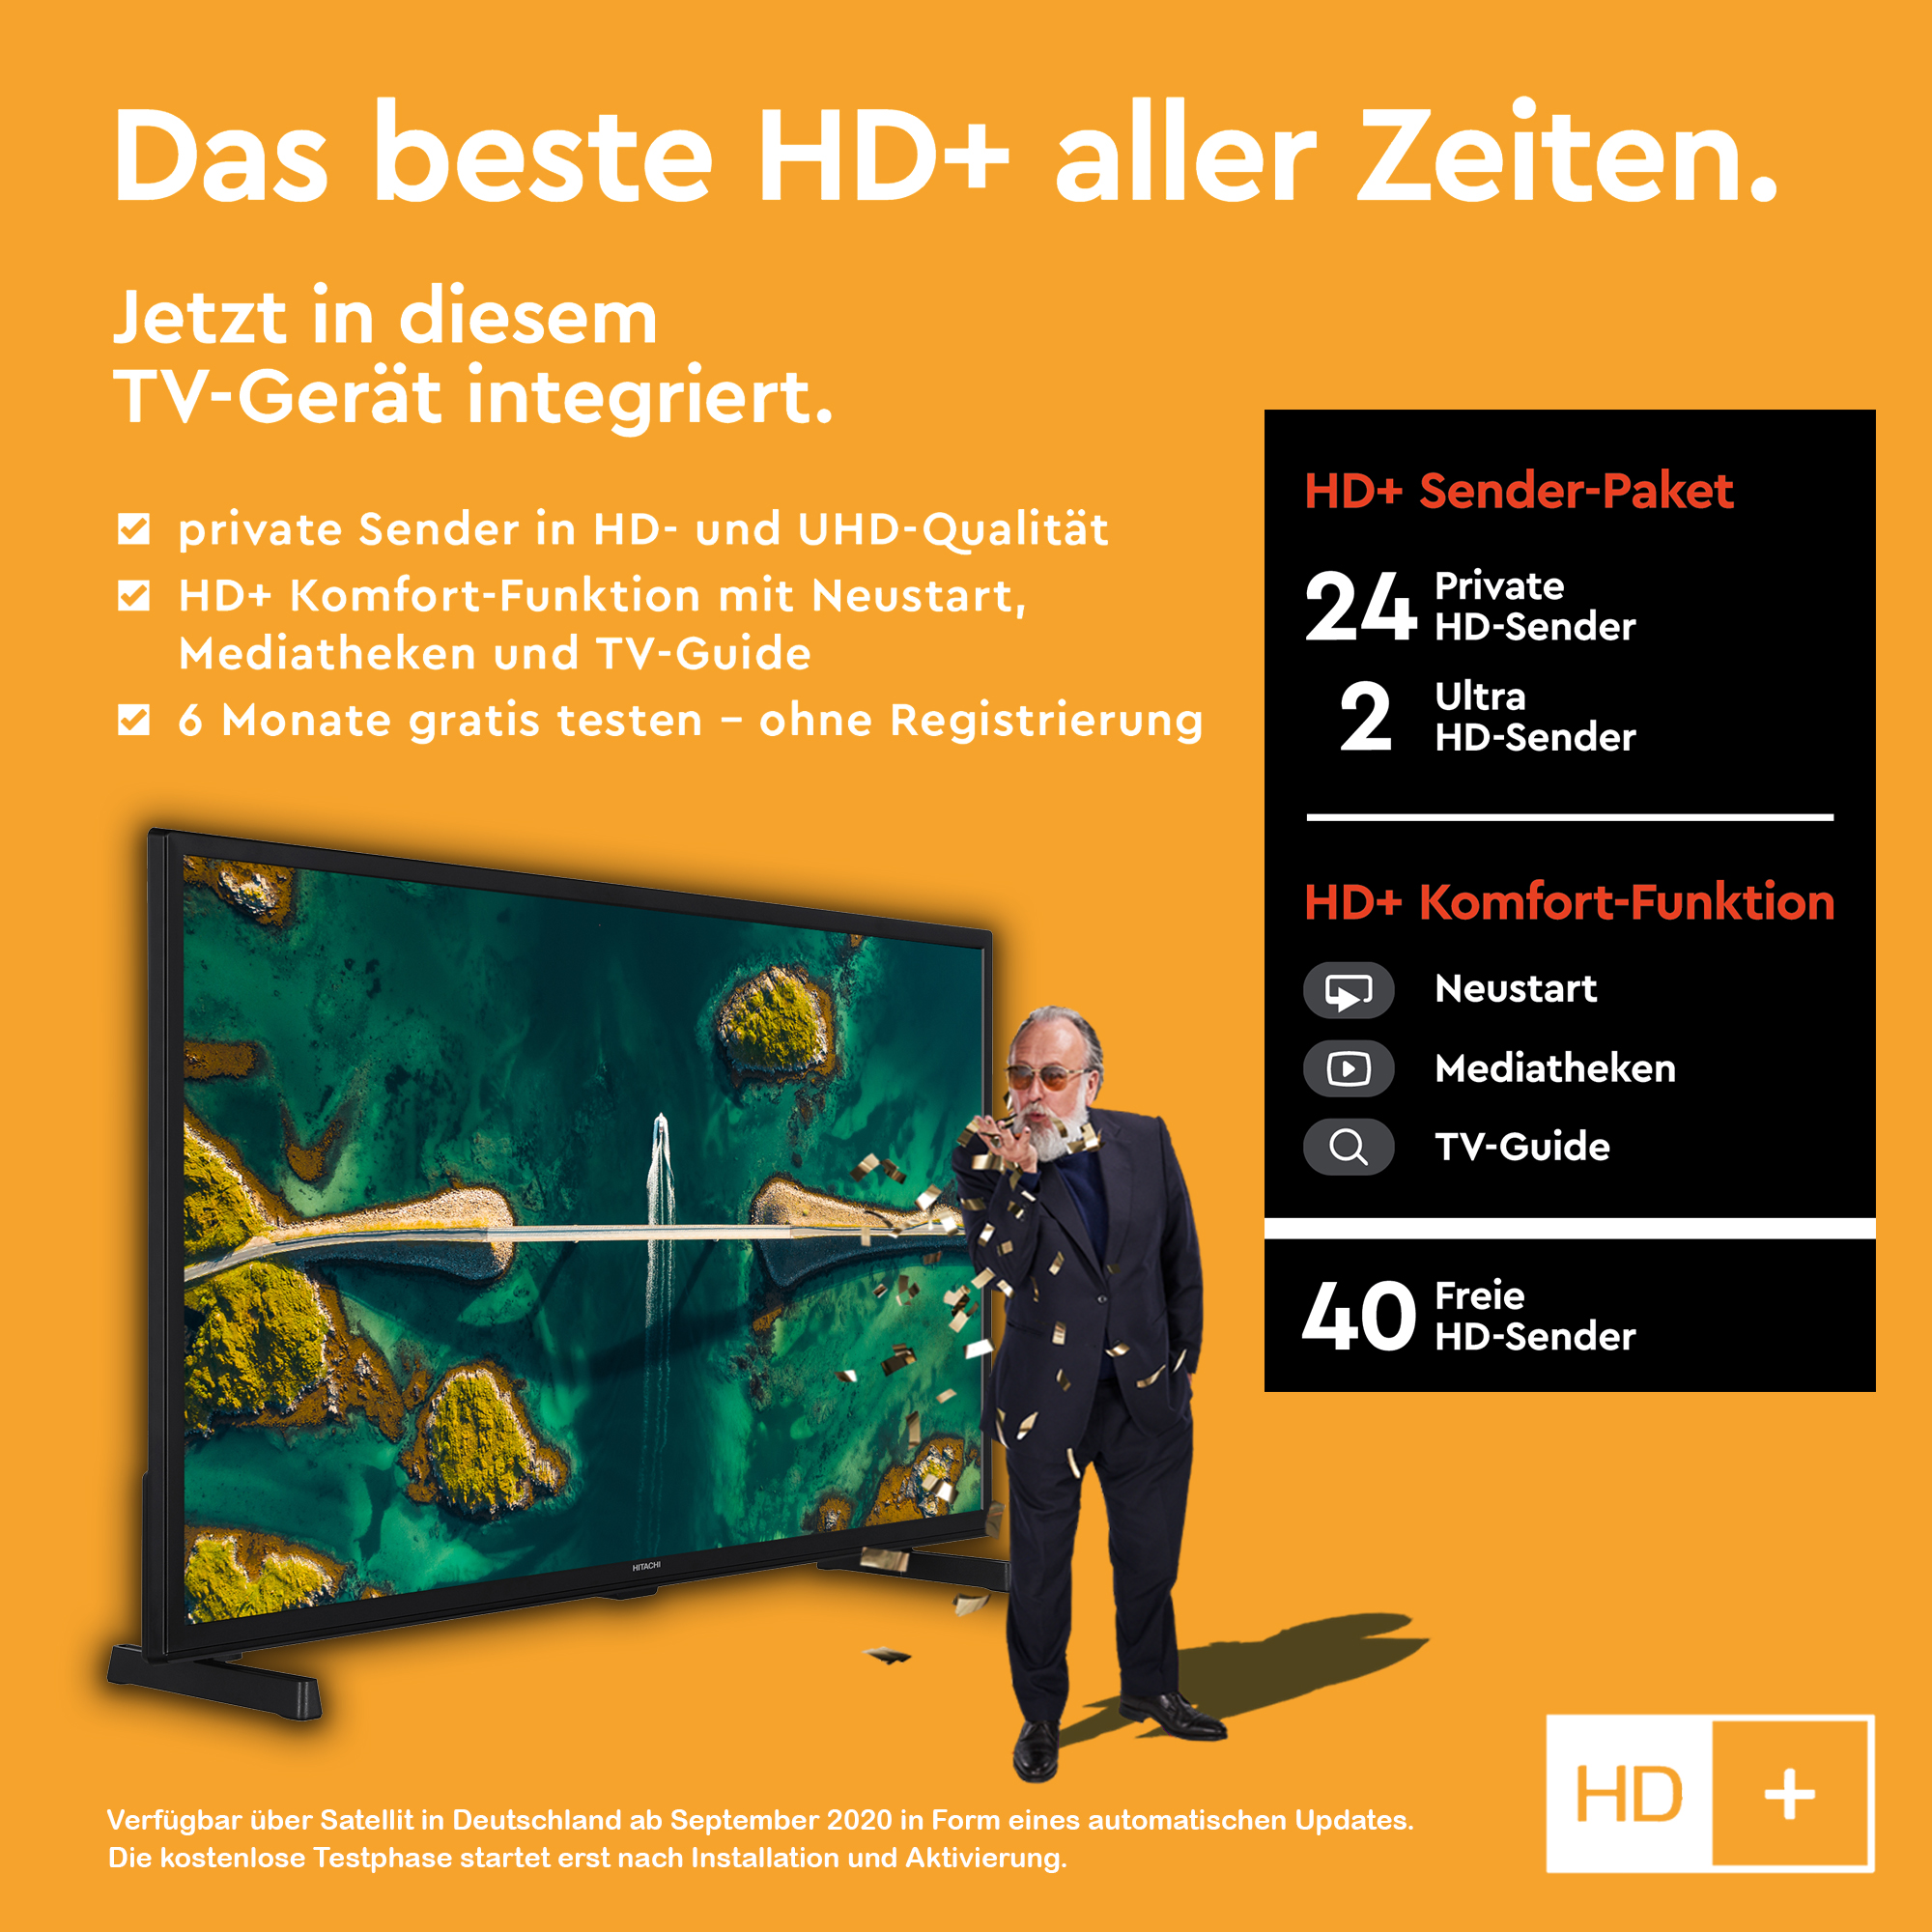 / SMART TV) cm, TV (Flat, 60 24 HITACHI HD-ready, H24E2305V Zoll LED